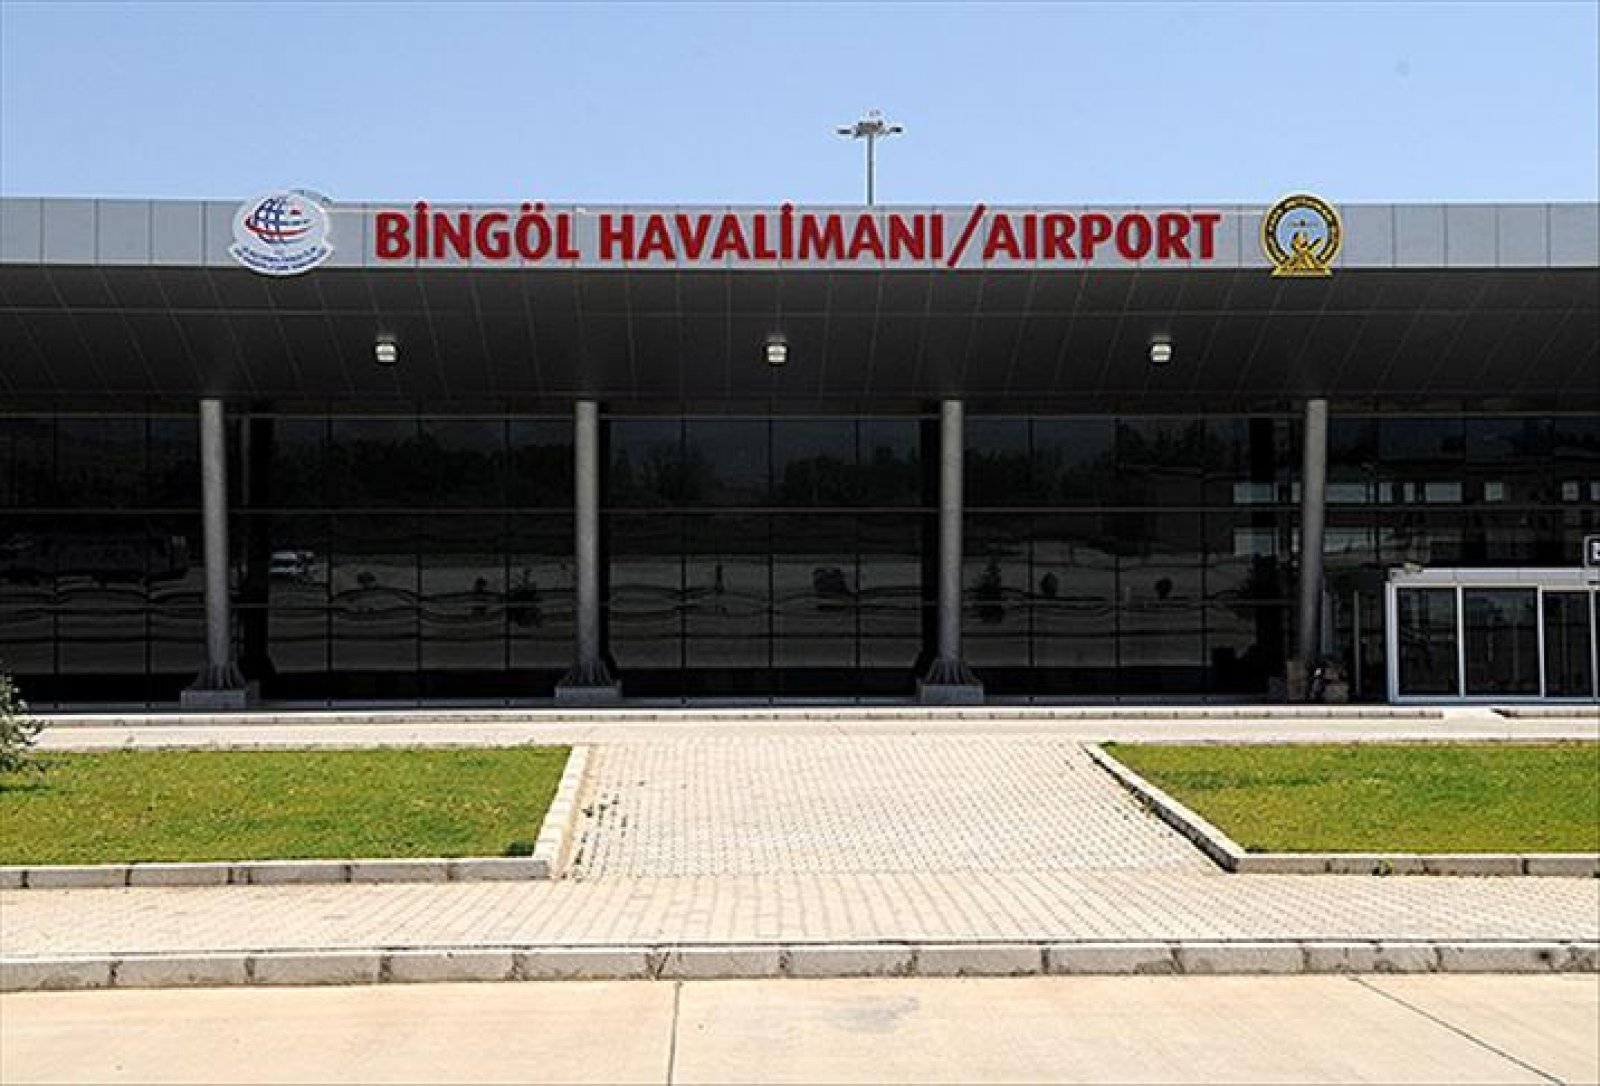 Bingöl Havalimanı